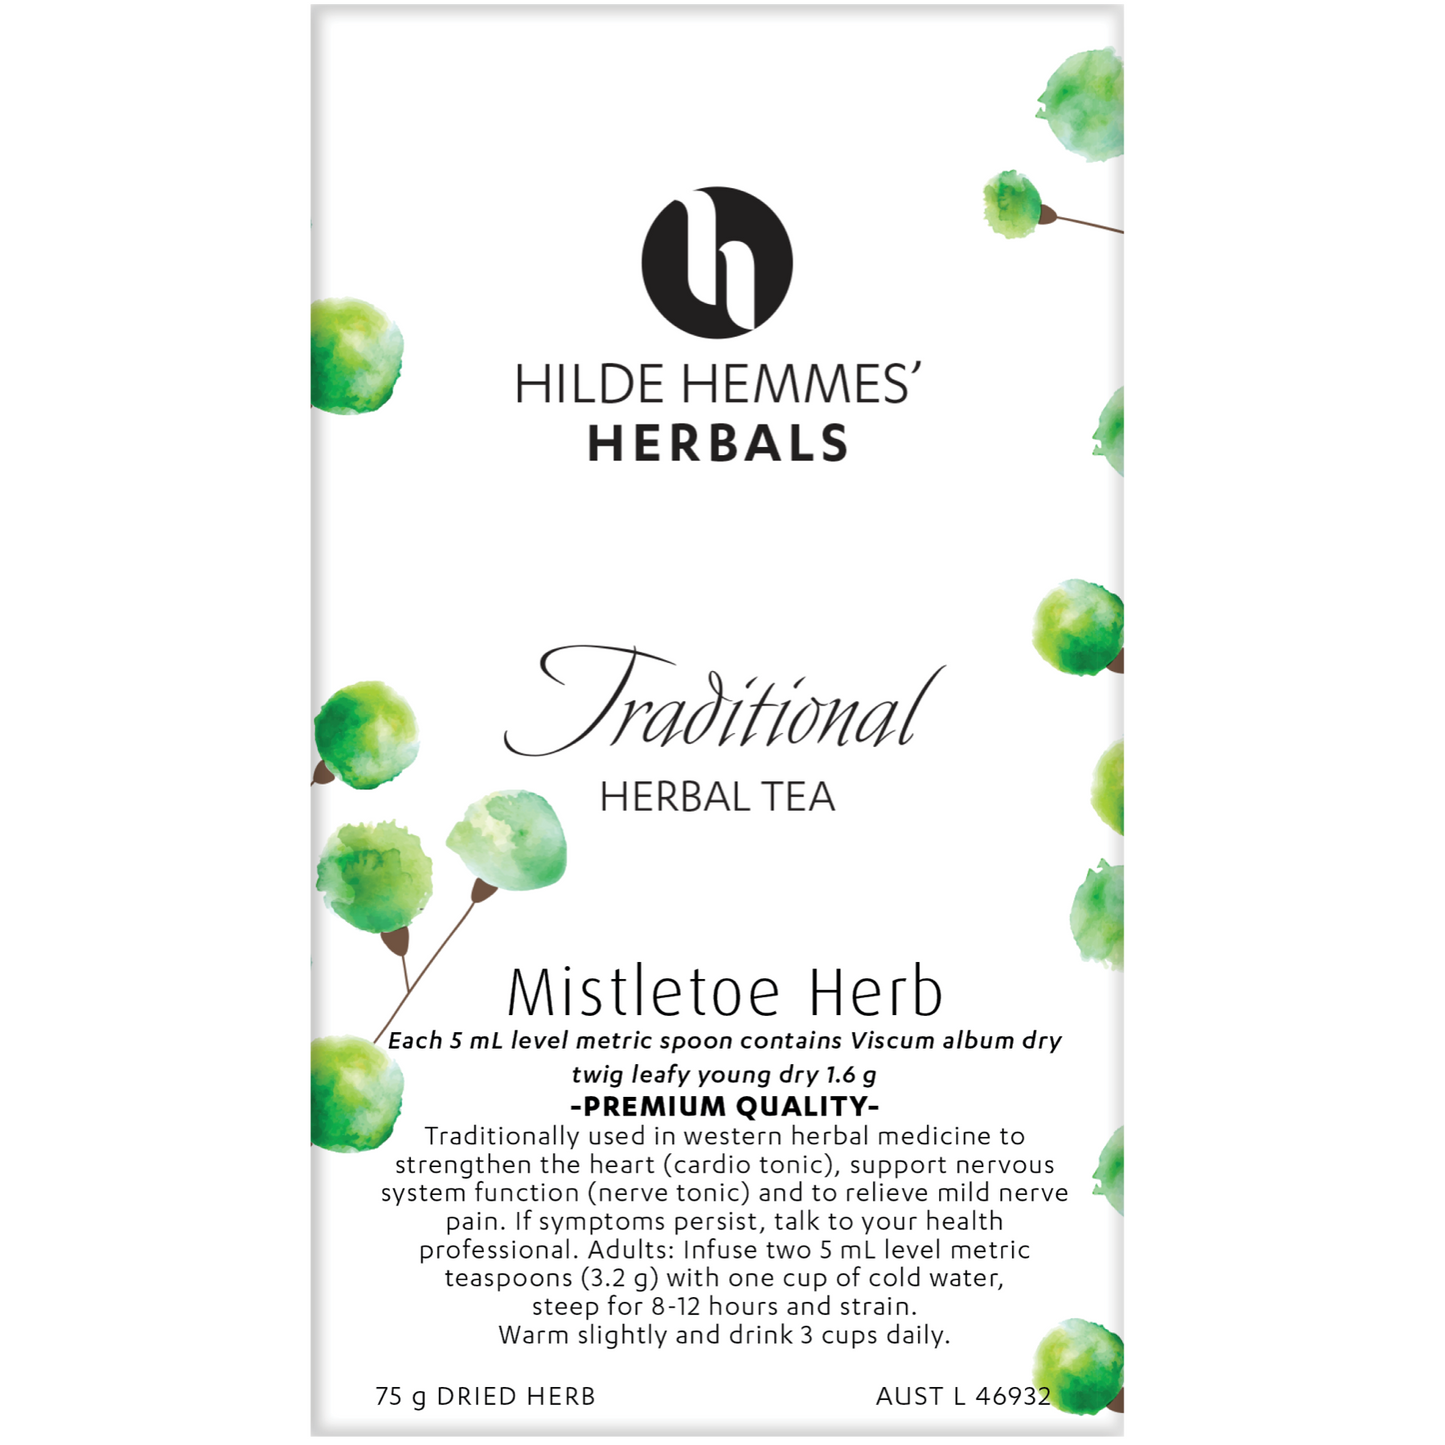 Hilde Hemmes Herbal's Loose Leaf Tea 75g, Mistletoe; Strengthen The Heart & Support The Nervous System